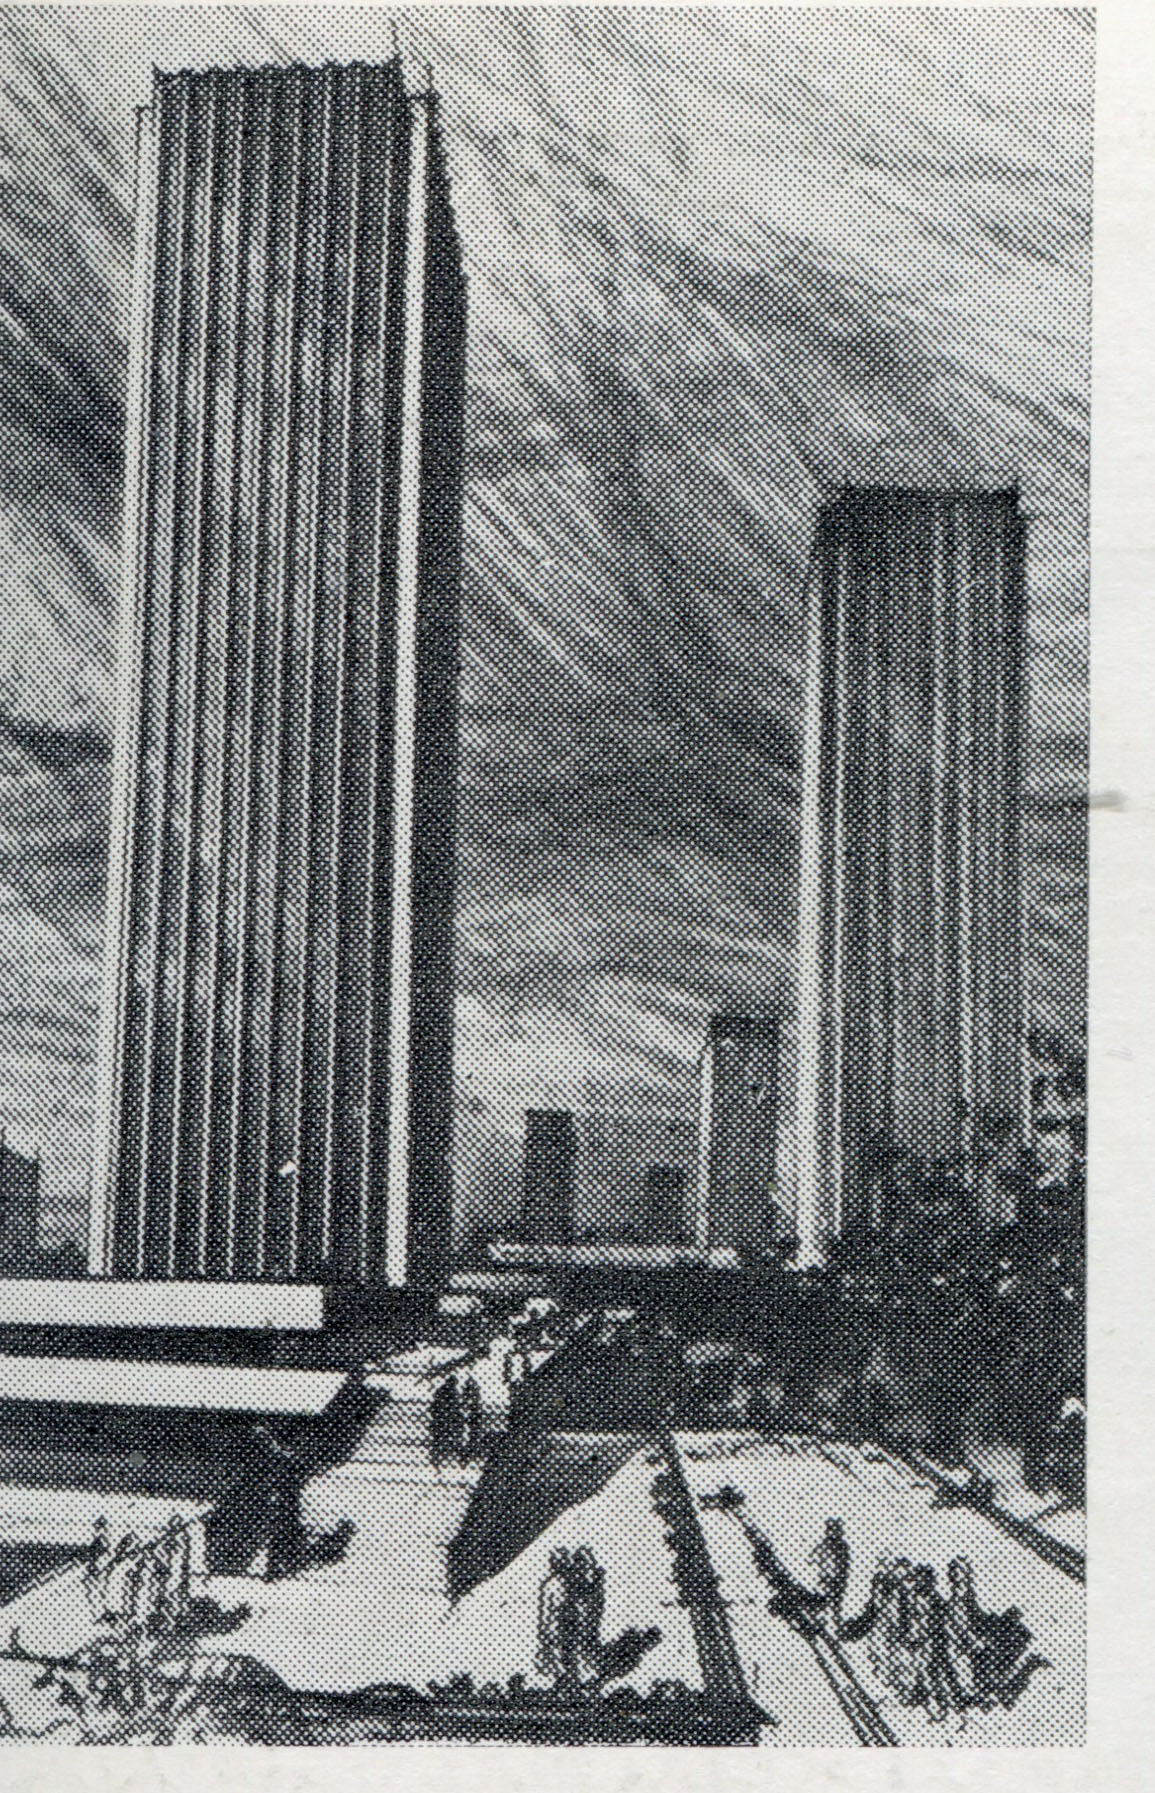 Wieżowiec Banku Handlowego SA, projekt 1977 r., źródło: "Architektura" 1978.